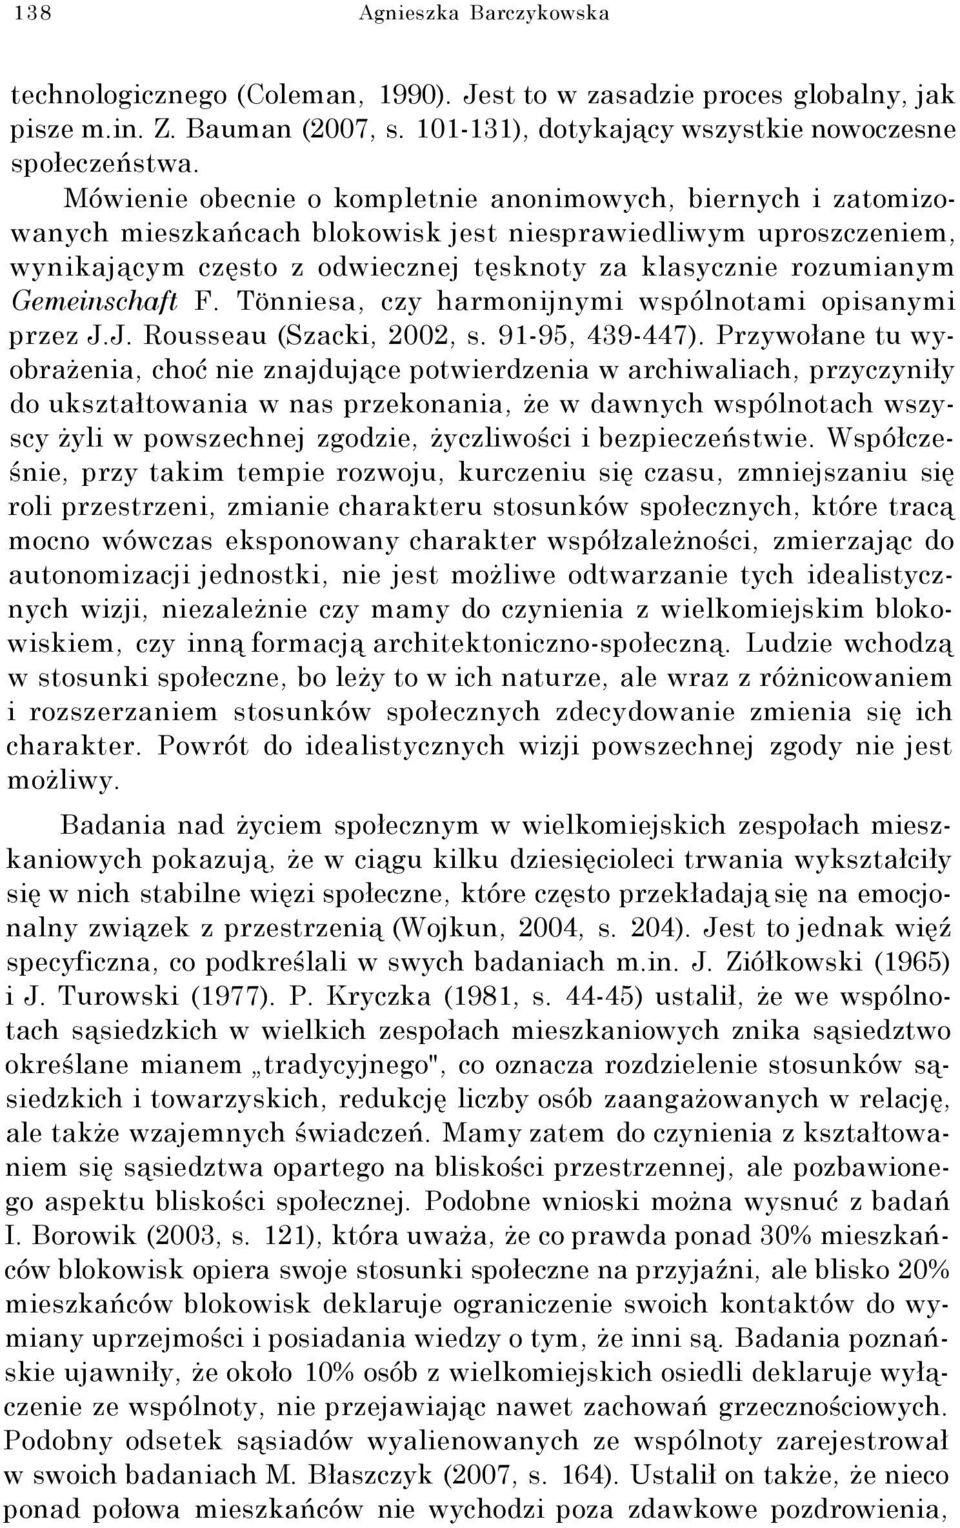 Gemeinschaft F. Tönniesa, czy harmonijnymi wspólnotami opisanymi przez J.J. Rousseau (Szacki, 2002, s. 91-95, 439-447).